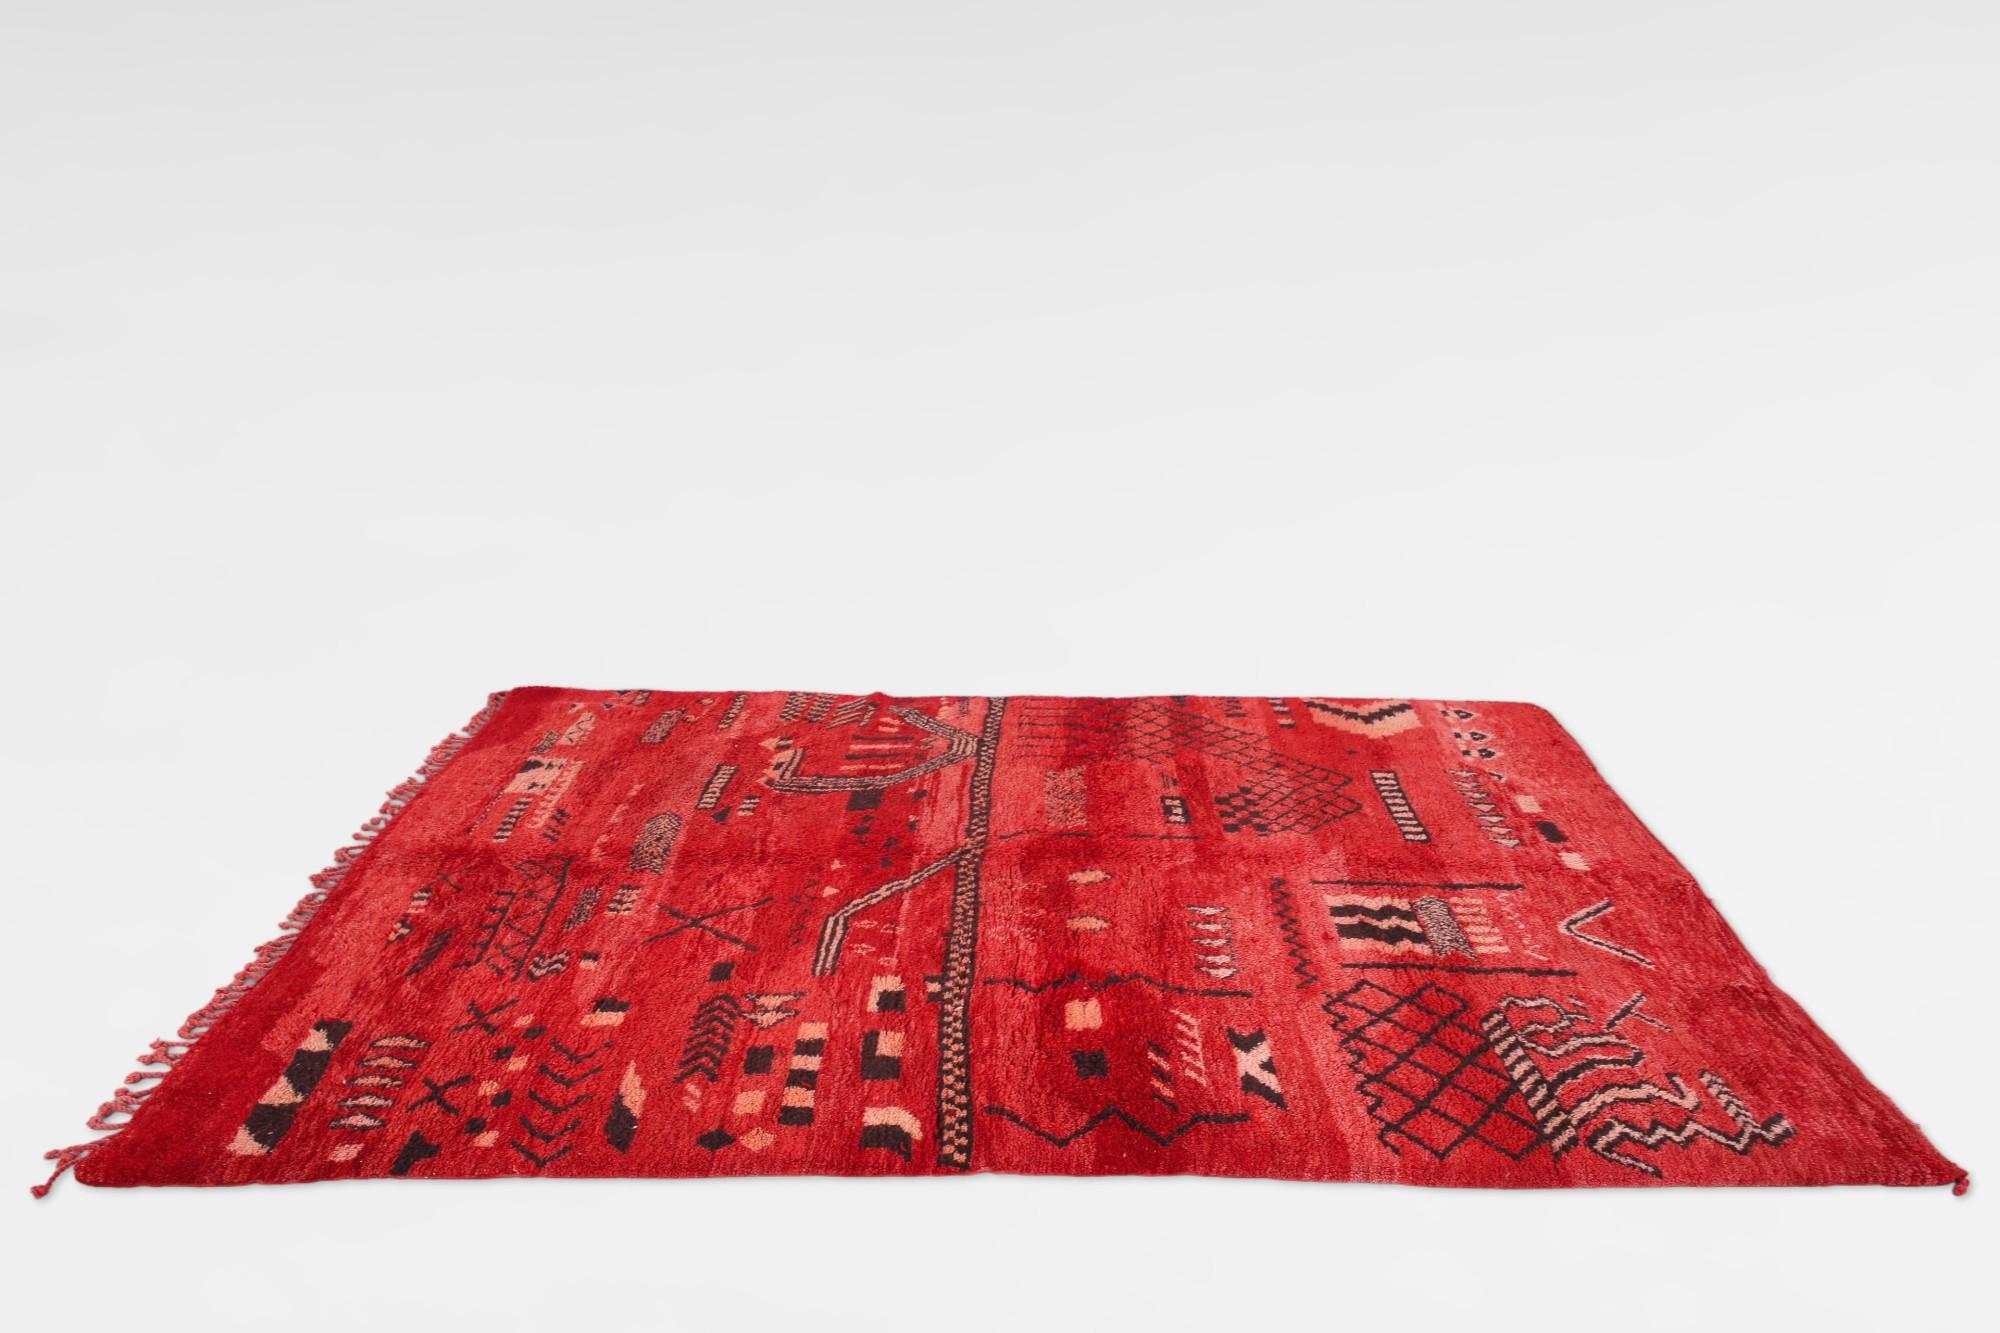 Roter marokkanischer Vintage-Teppich Beni Mrirt, ein zeitloses Symbol der marokkanischen Weberei-Tradition. Diese von geschickten Kunsthandwerkern des Beni Mrirt-Stammes im marokkanischen Atlasgebirge gefertigten Teppiche bestechen durch ihre üppige